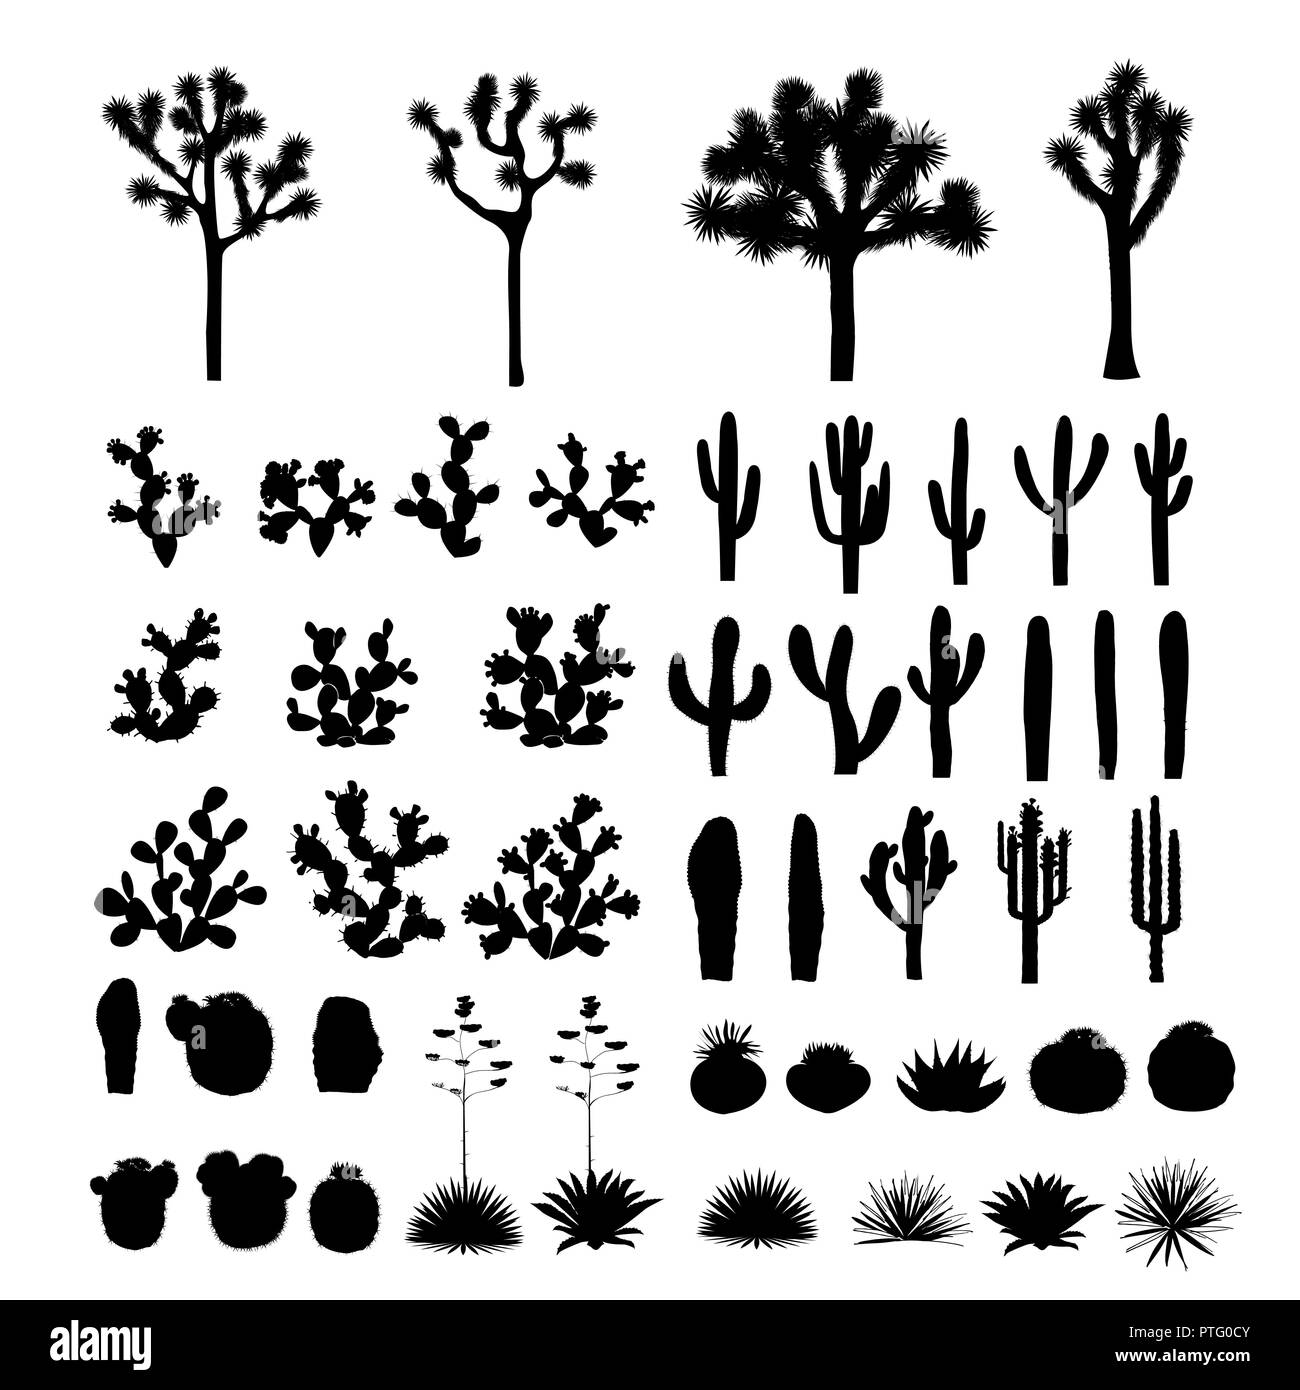 Großes Set mit Silhouetten von Kakteen, Agaven, Joshua Tree und Feigenkakteen. Vektor cactus Sammlung, schwarze und weiße Design-Elemente Stock Vektor